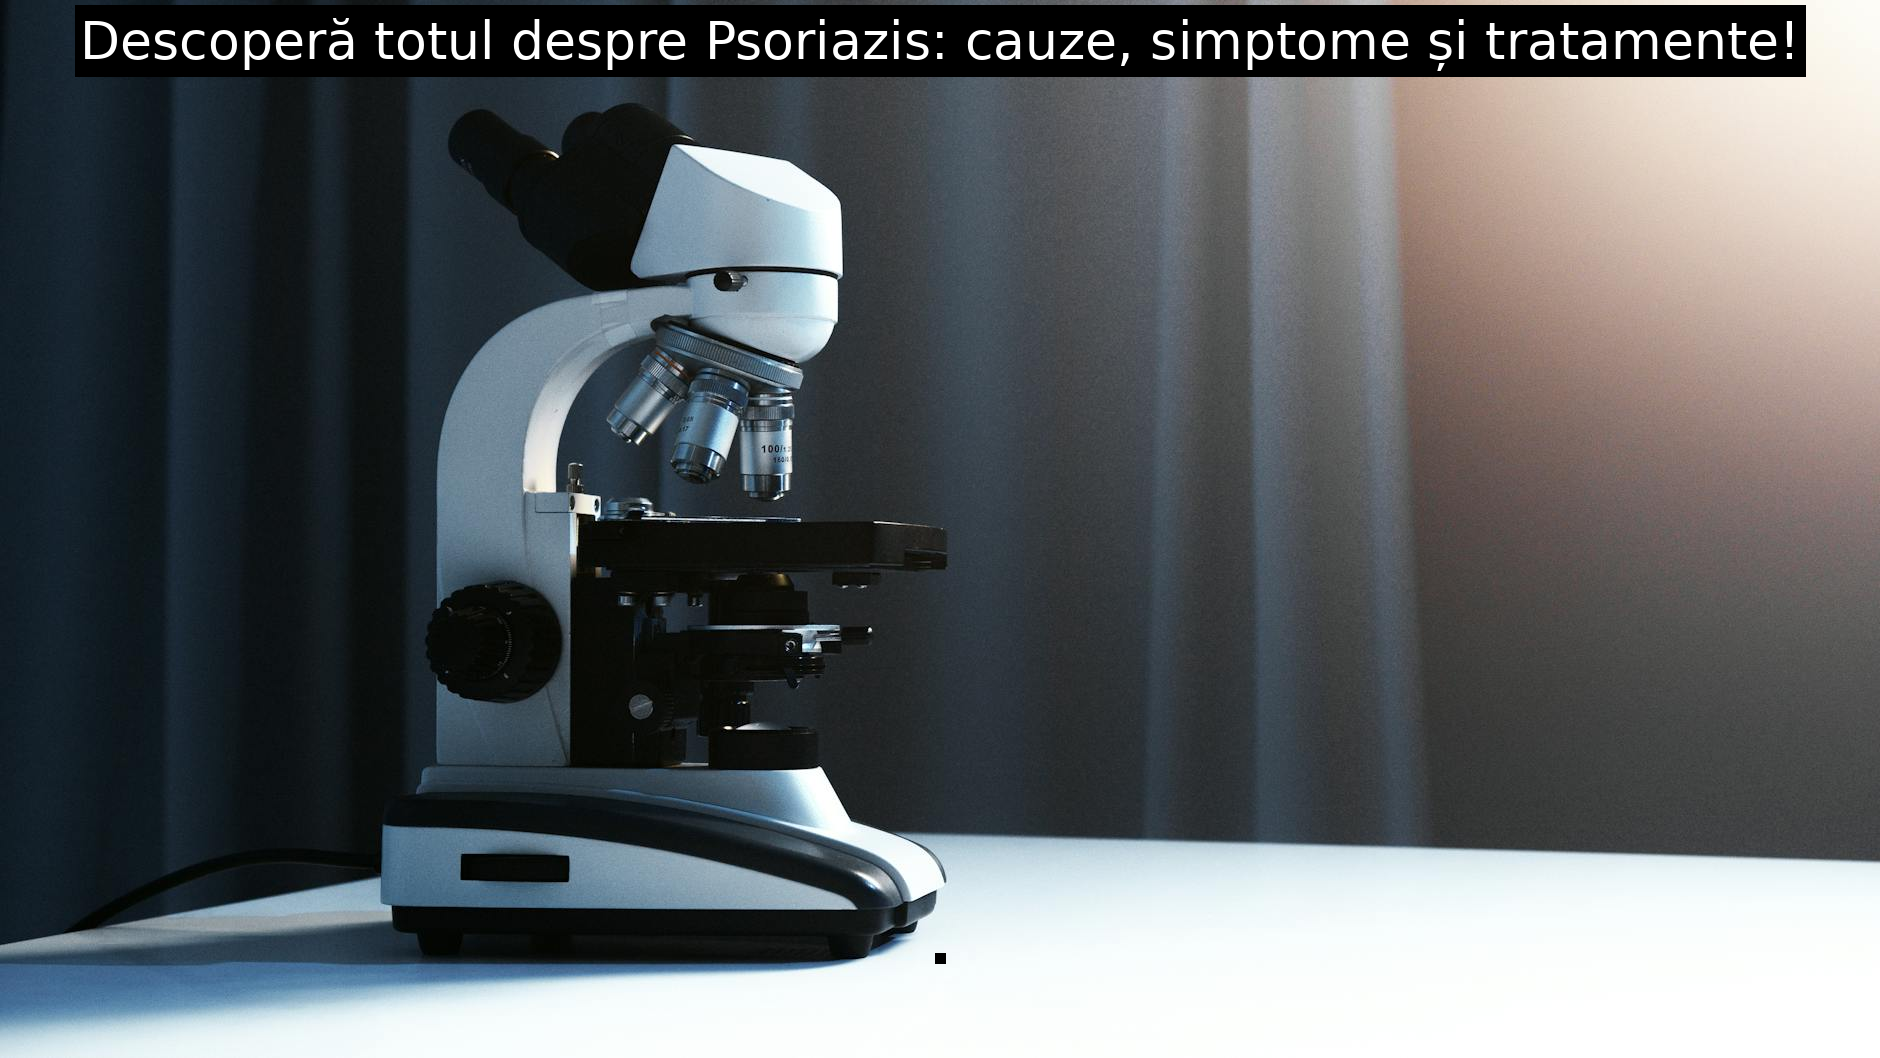 Descoperă totul despre Psoriazis: cauze, simptome și tratamente!